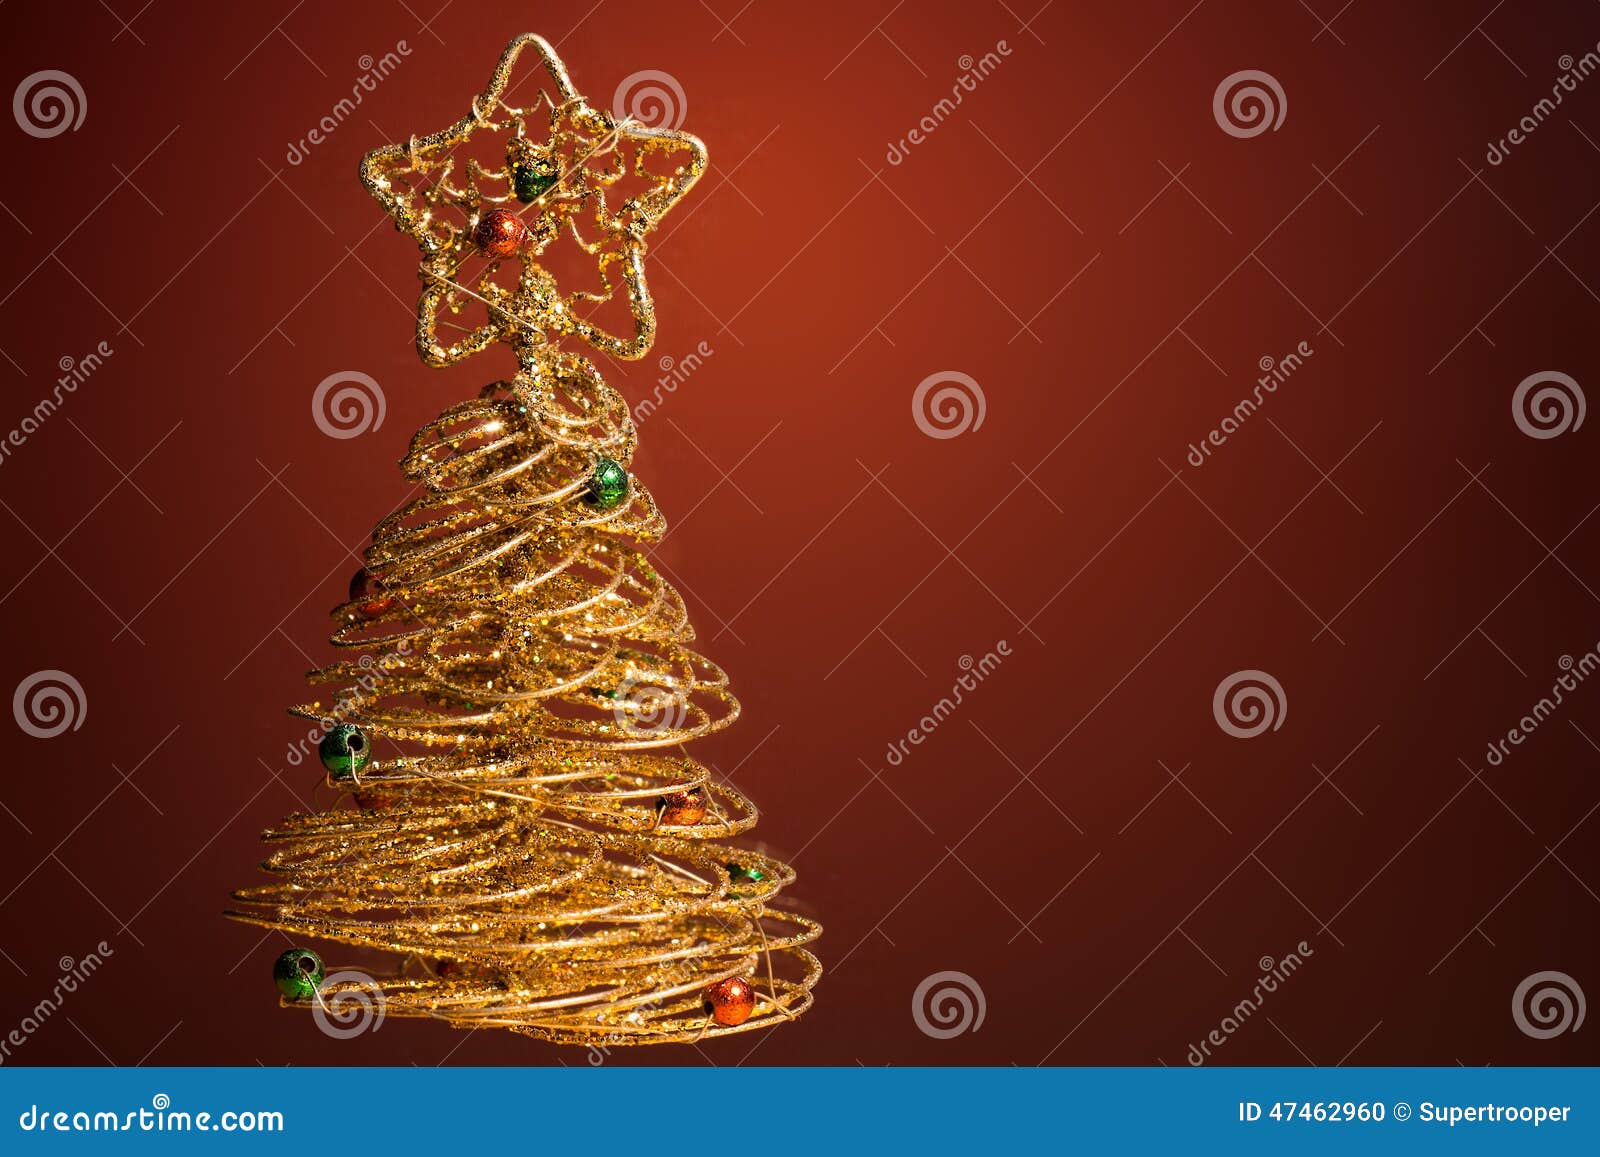 Vektorversion in meinem Portefeuille. Goldener funkelnder Weihnachtsbaum auf dunkelrotem Hintergrund